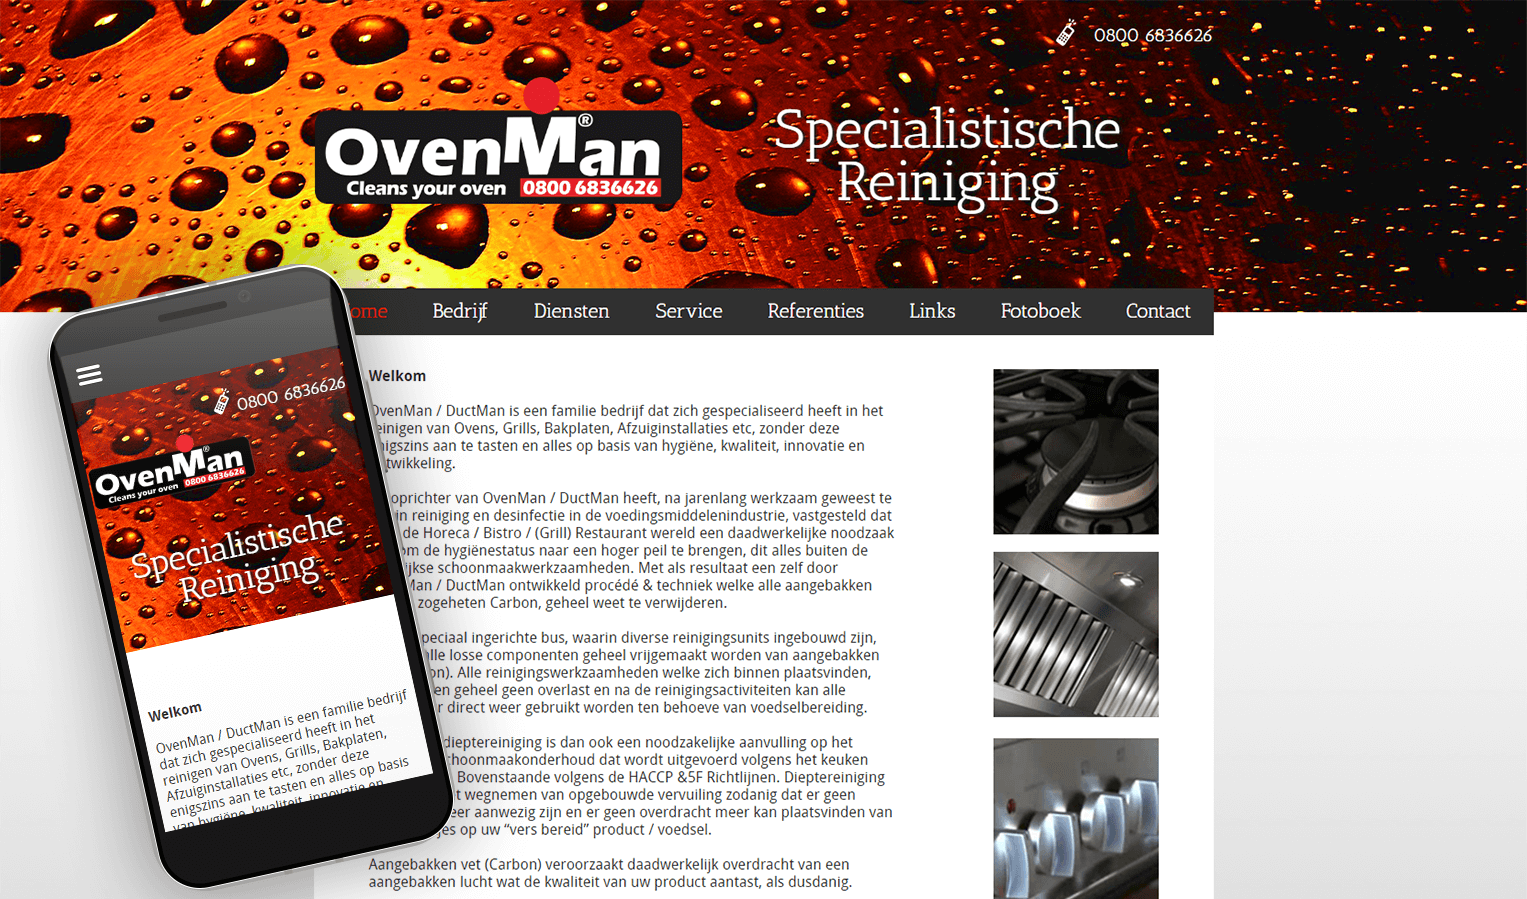 Ovenman.nl - Een van de drie dienstensites van Clean3concept